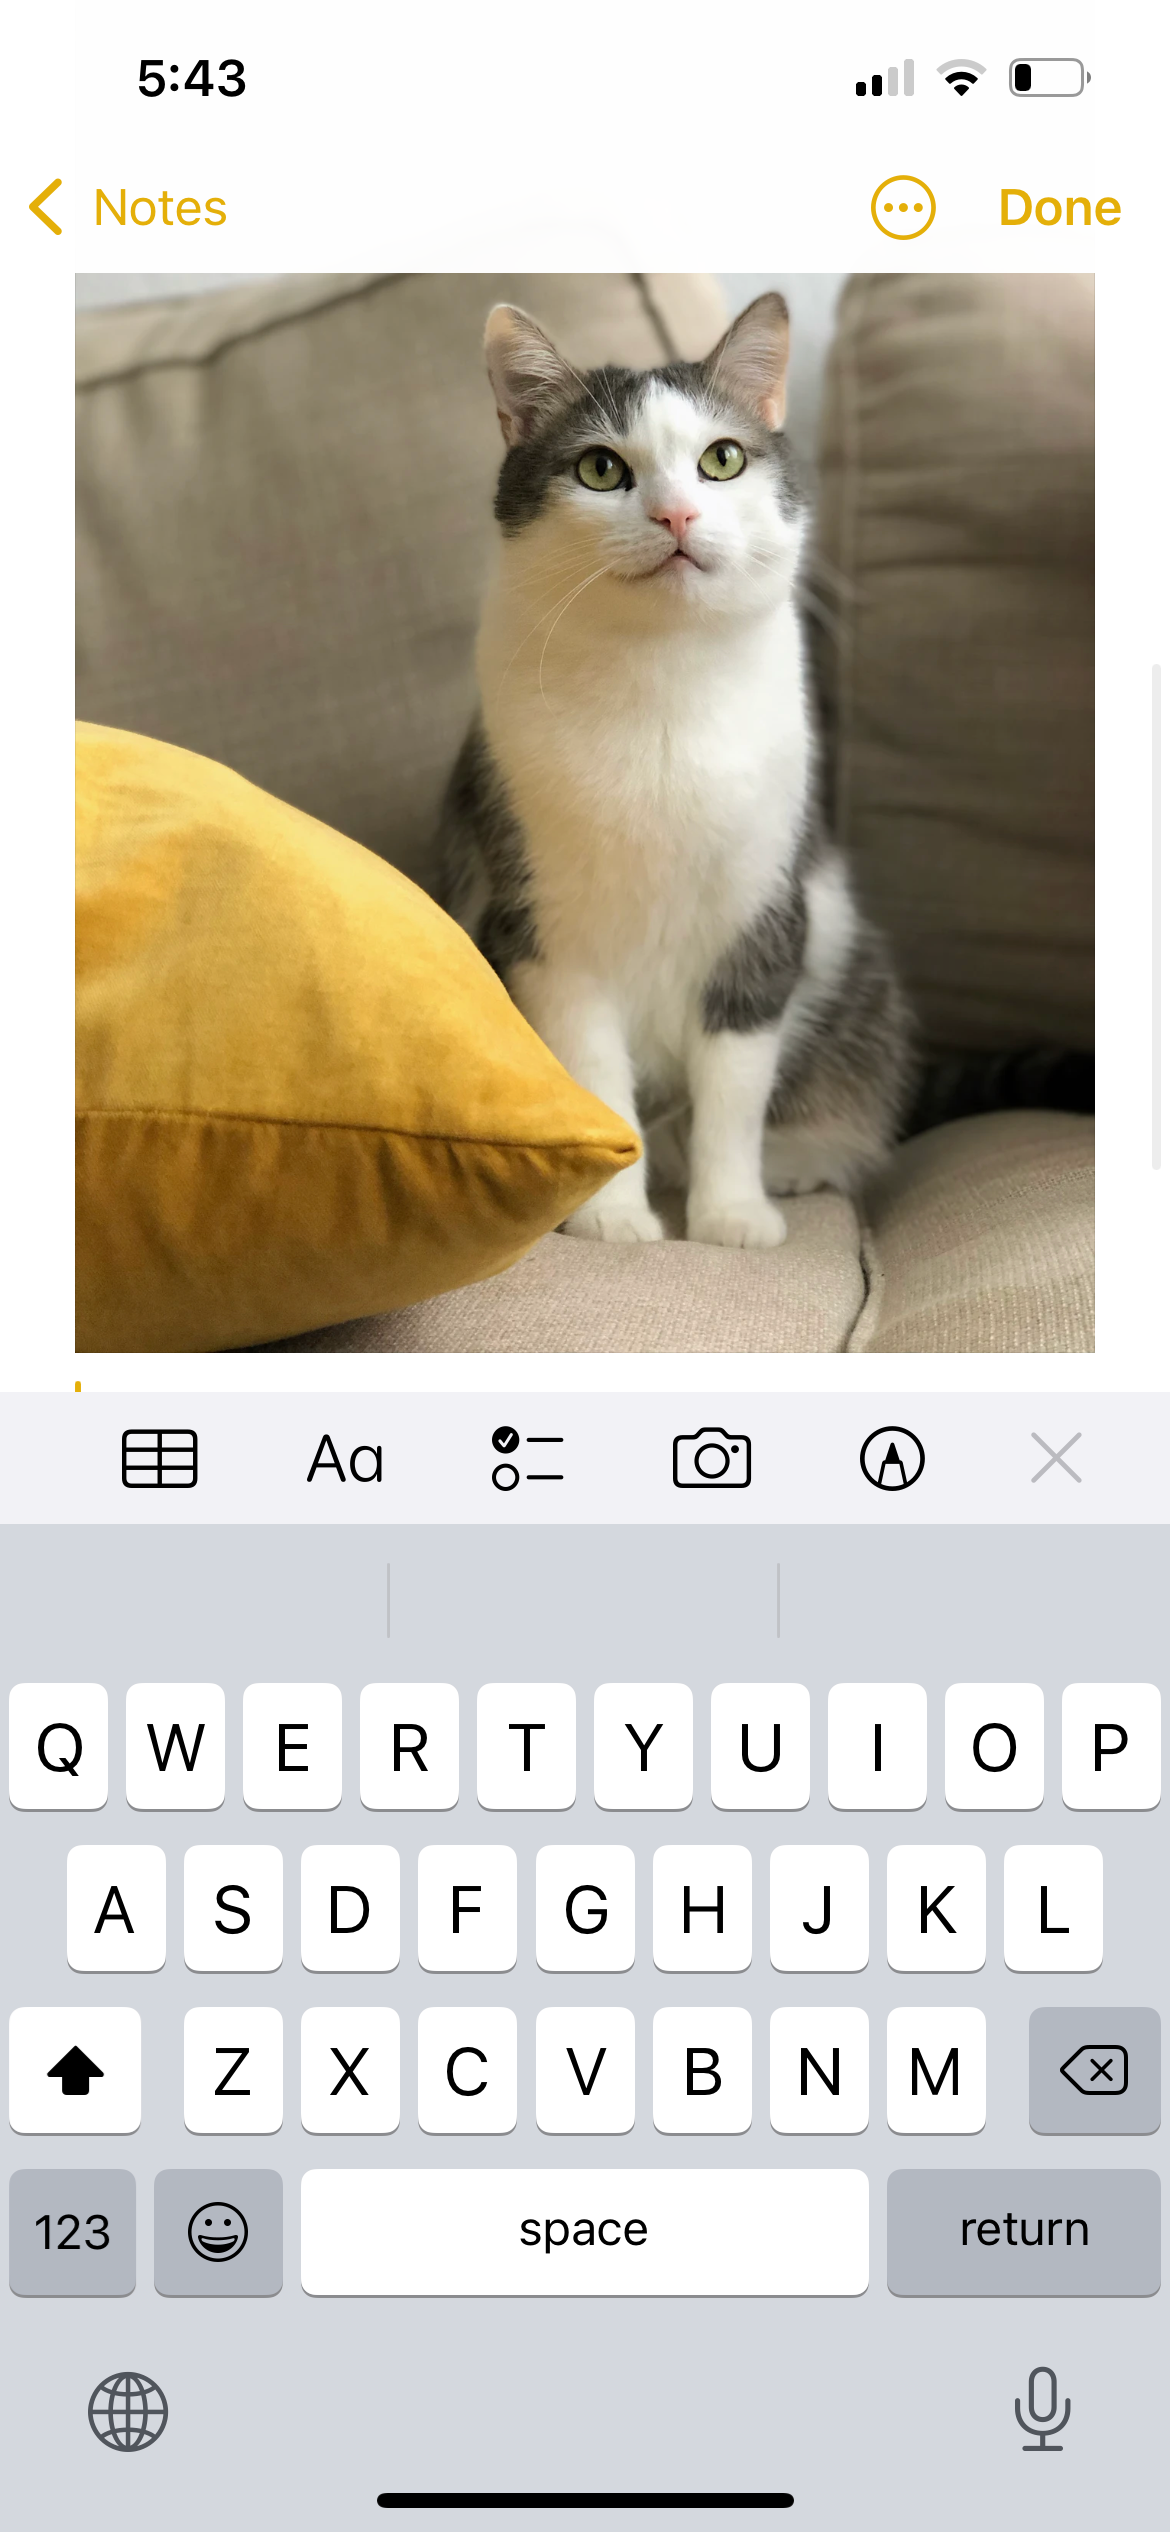 عکس گربه روی مبل در برنامه یادداشت